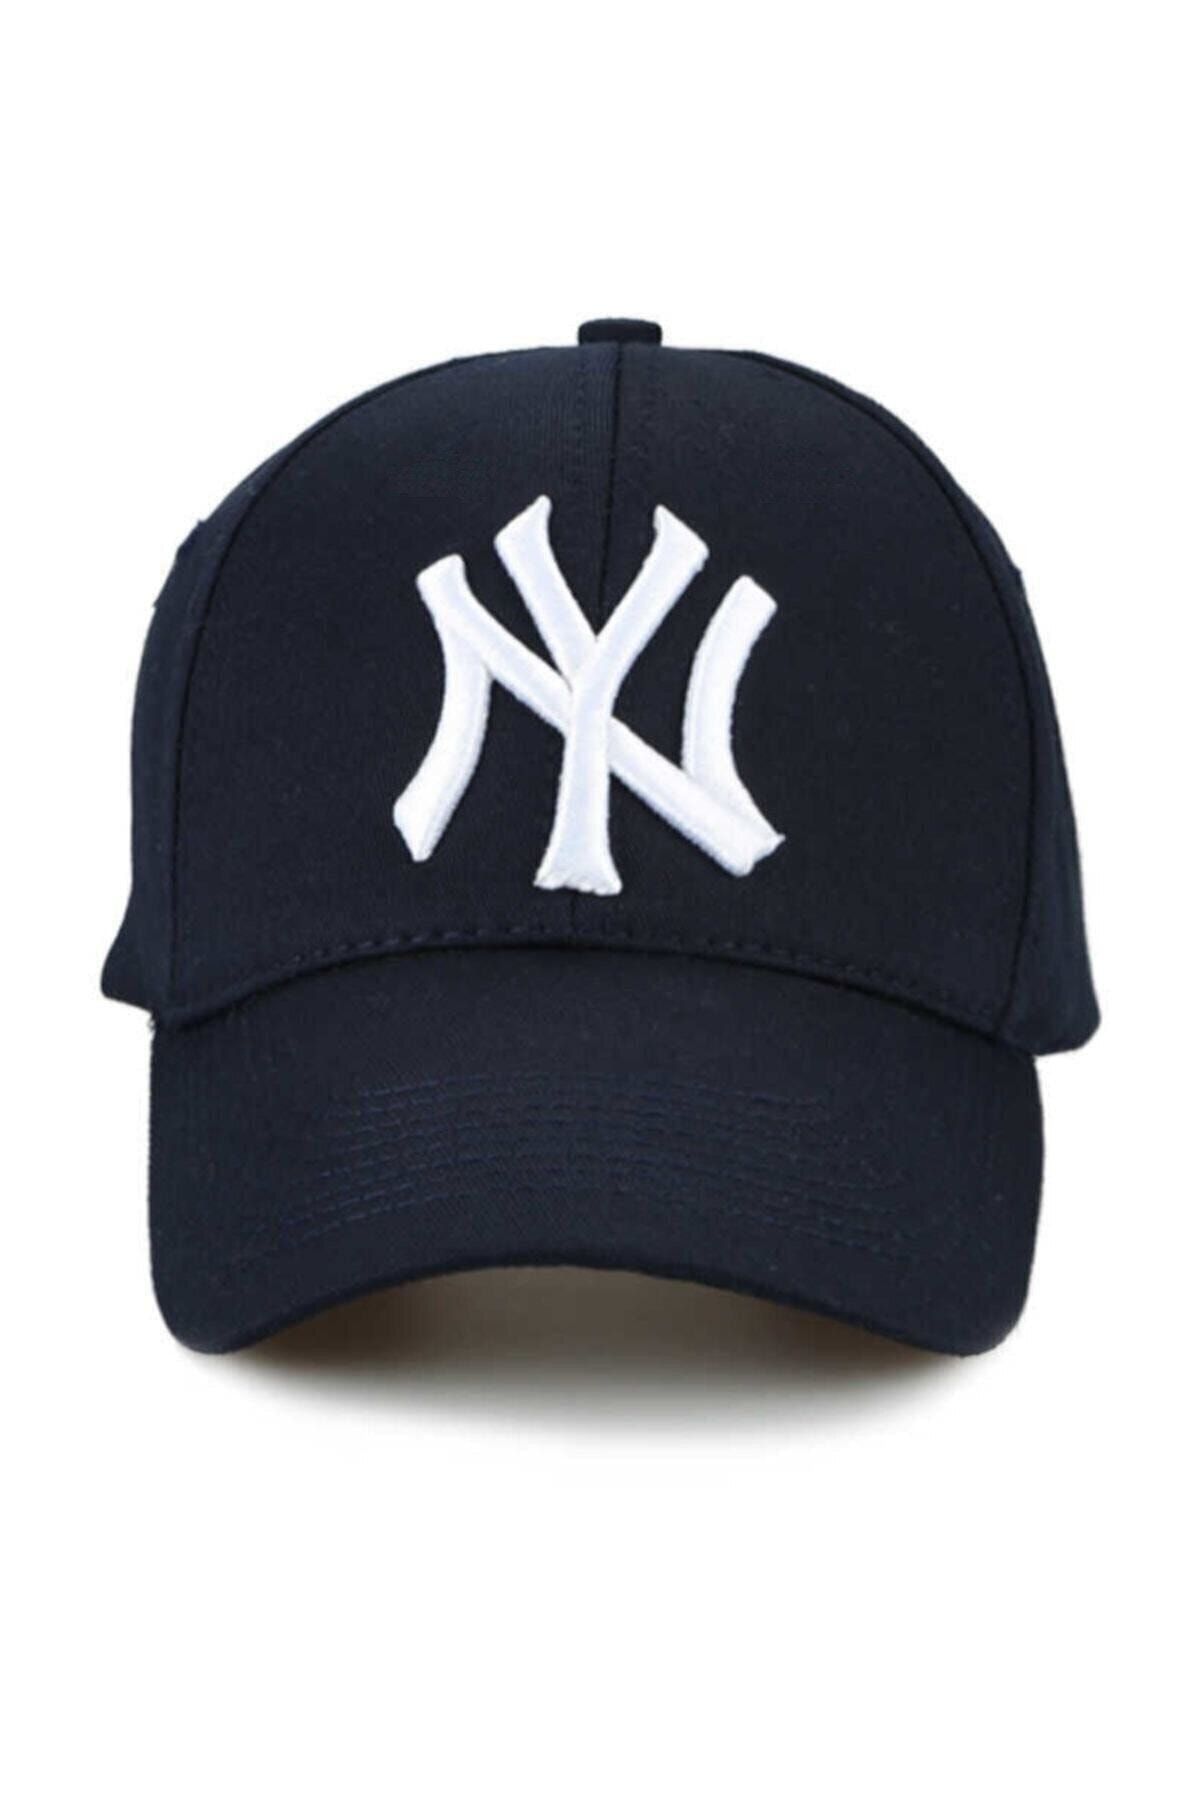 Nacar Ny New York Şapka Unisex Lacivert Şapka